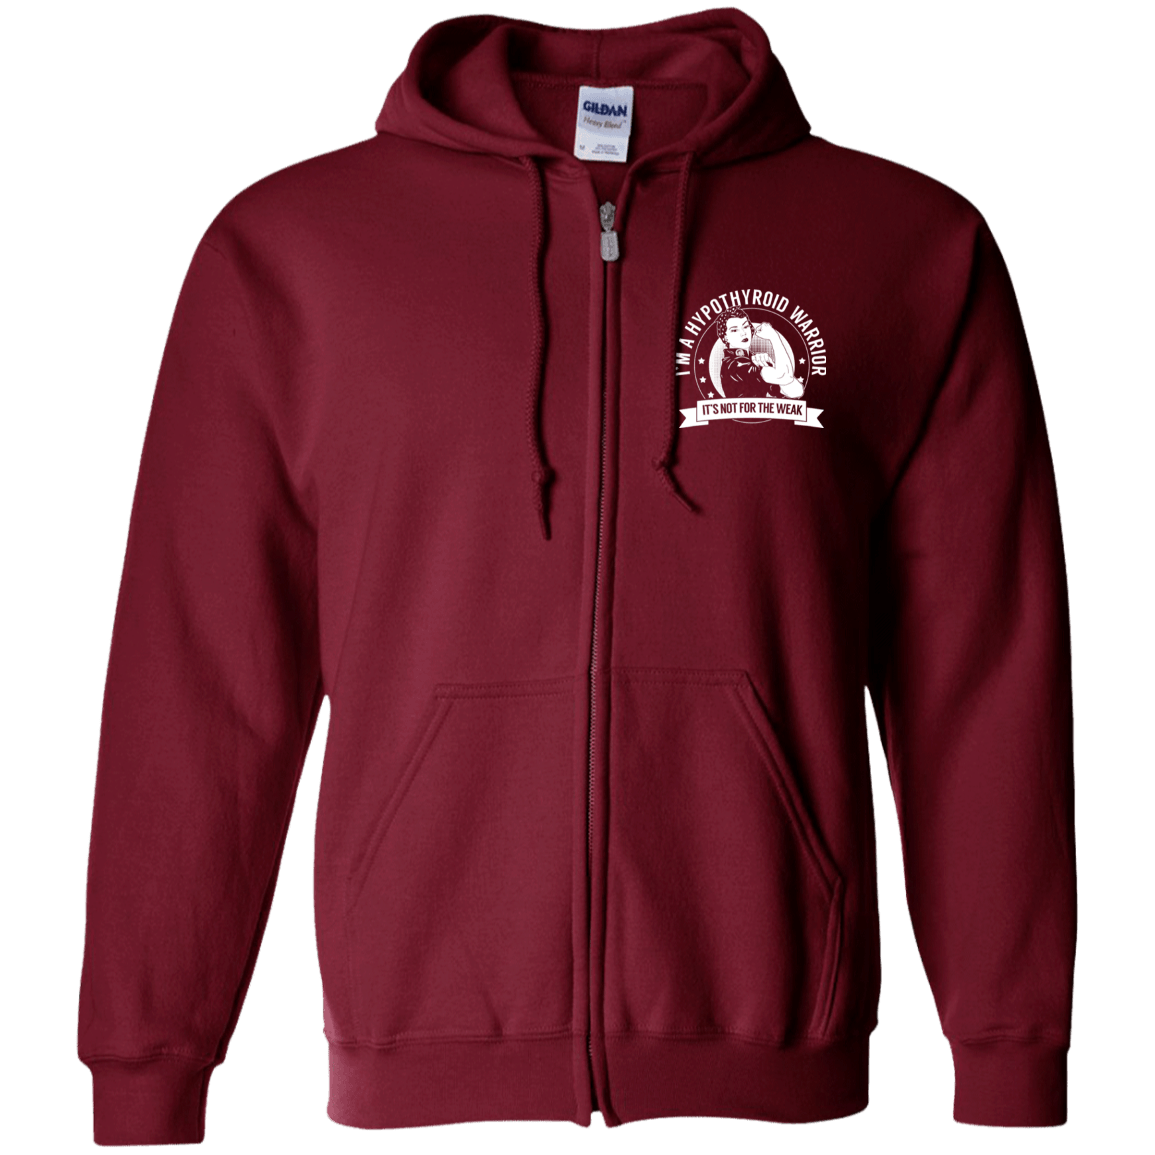 Hypothyroid Warrior NFTW Zip Up Hooded Sweatshirt - The Unchargeables